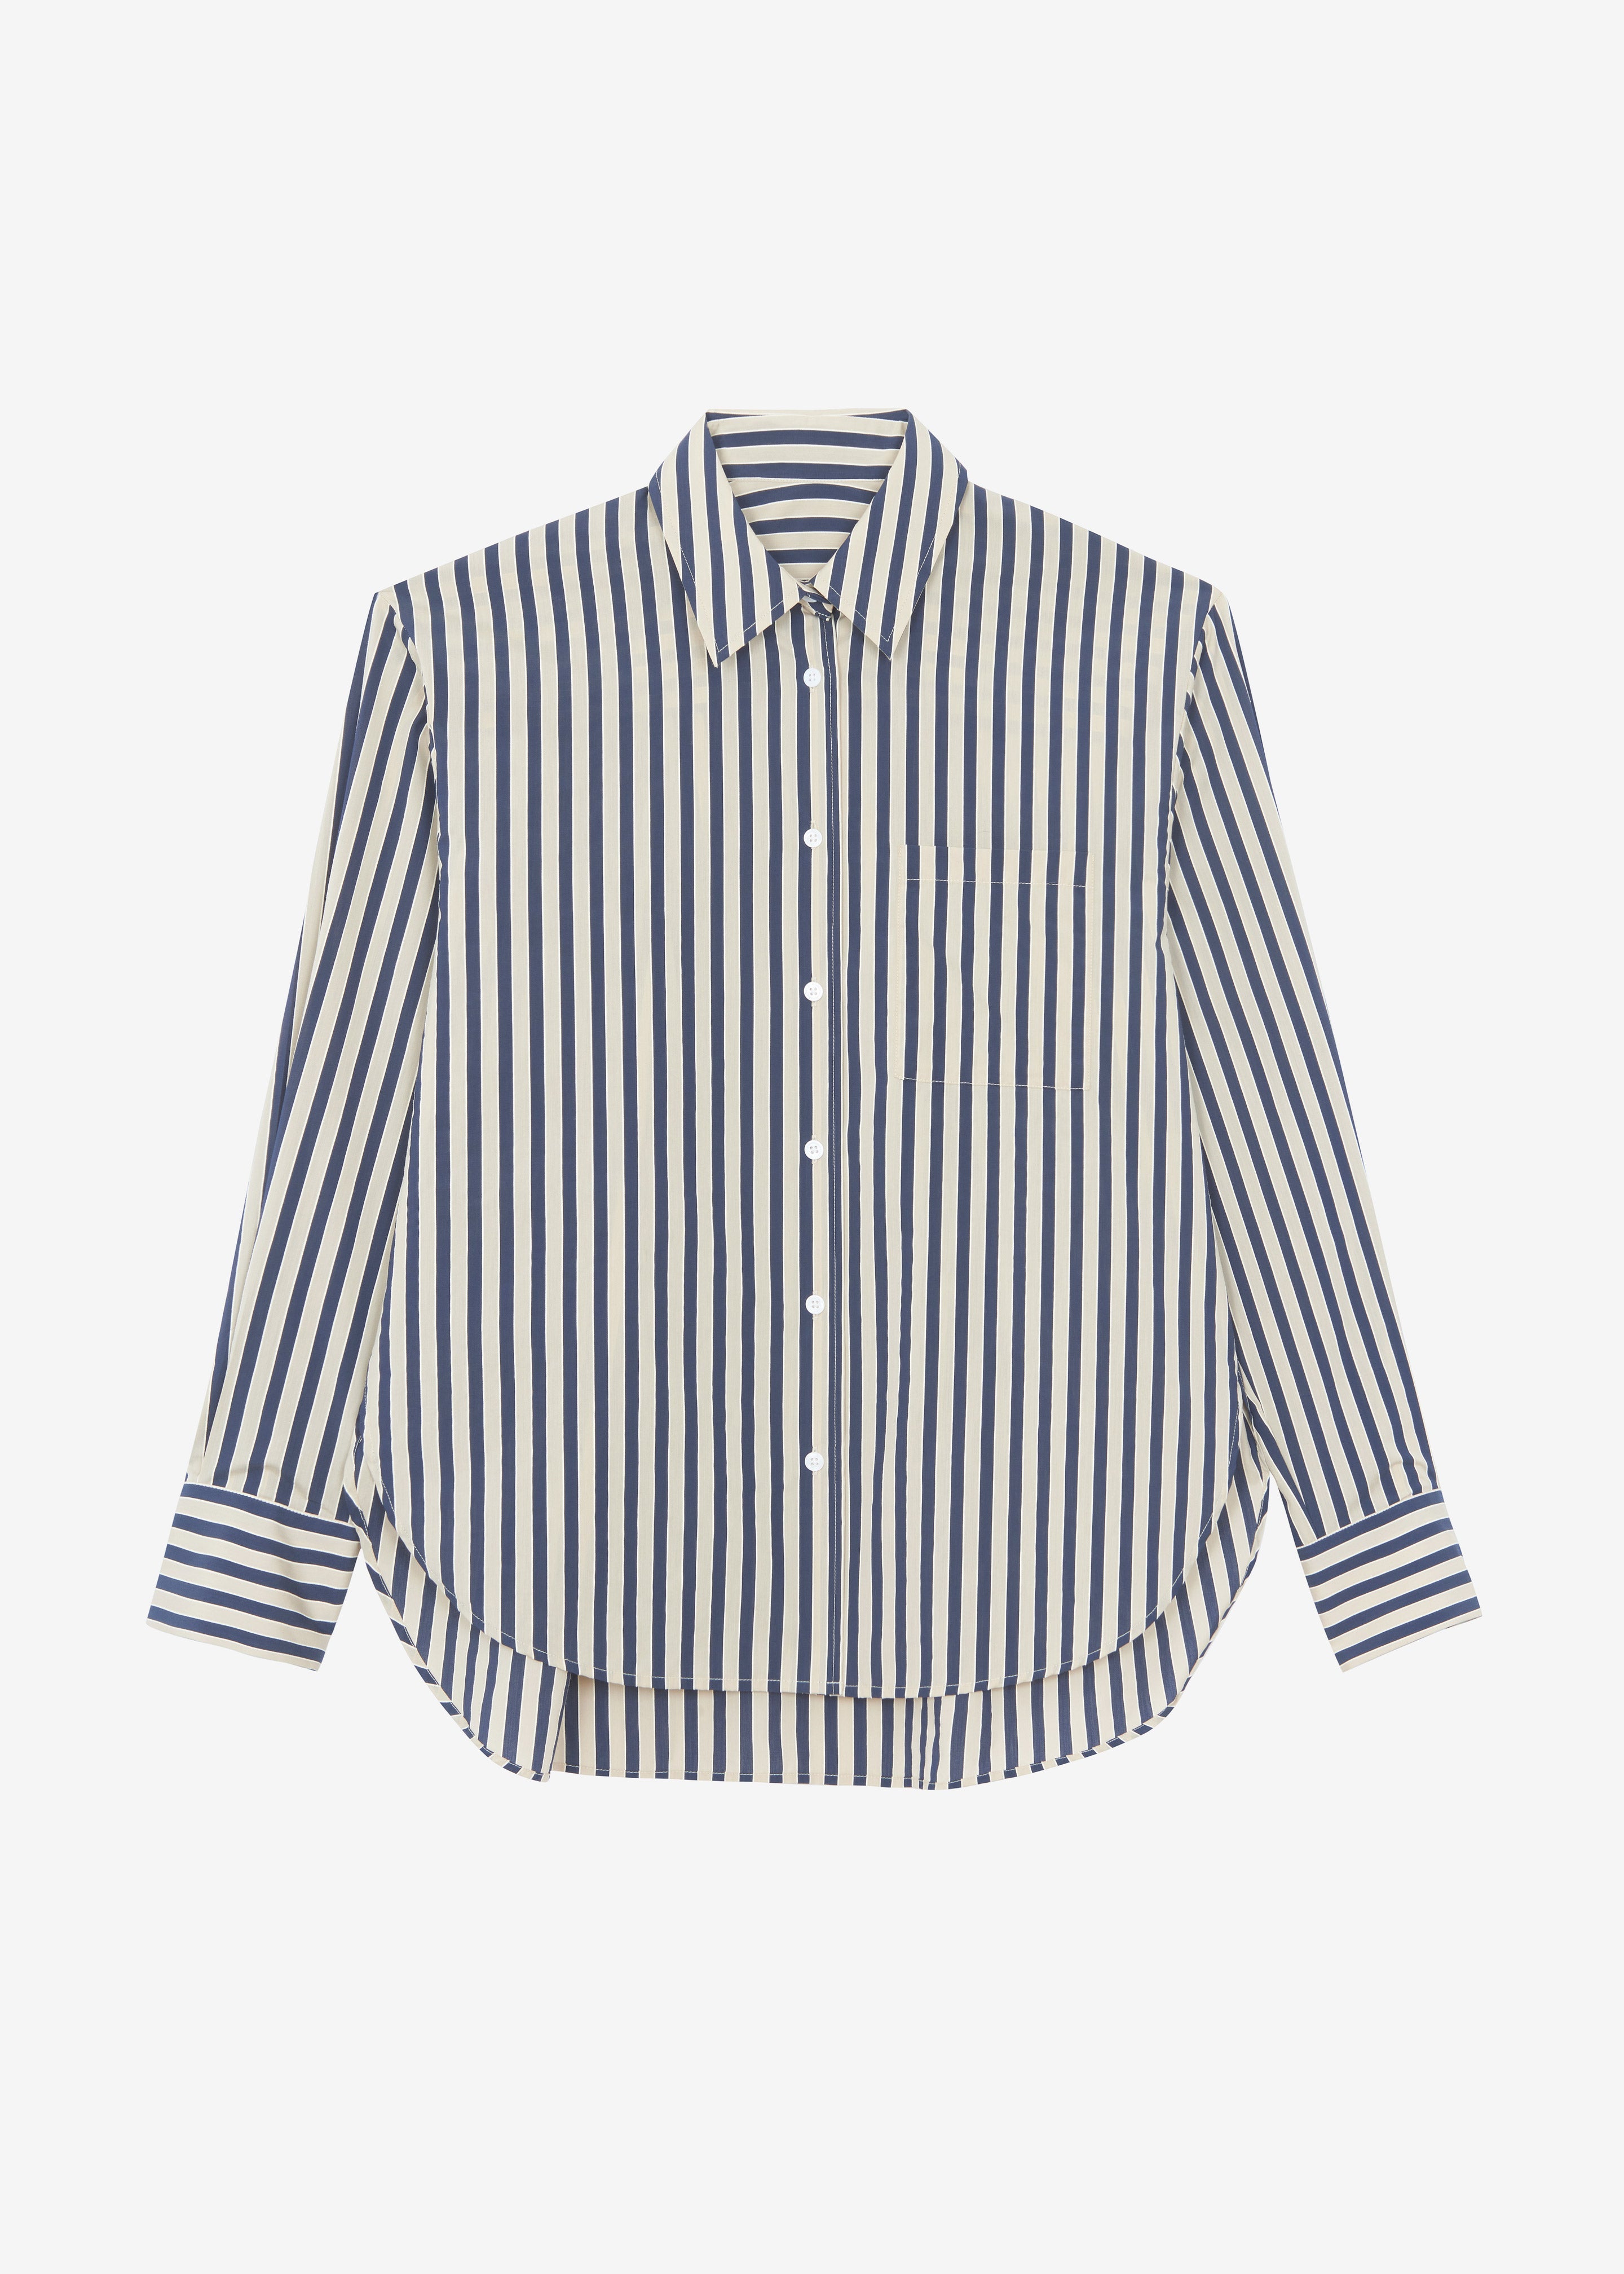 Lui Textured Shirt - Beige/Navy Multi Stripe - 7